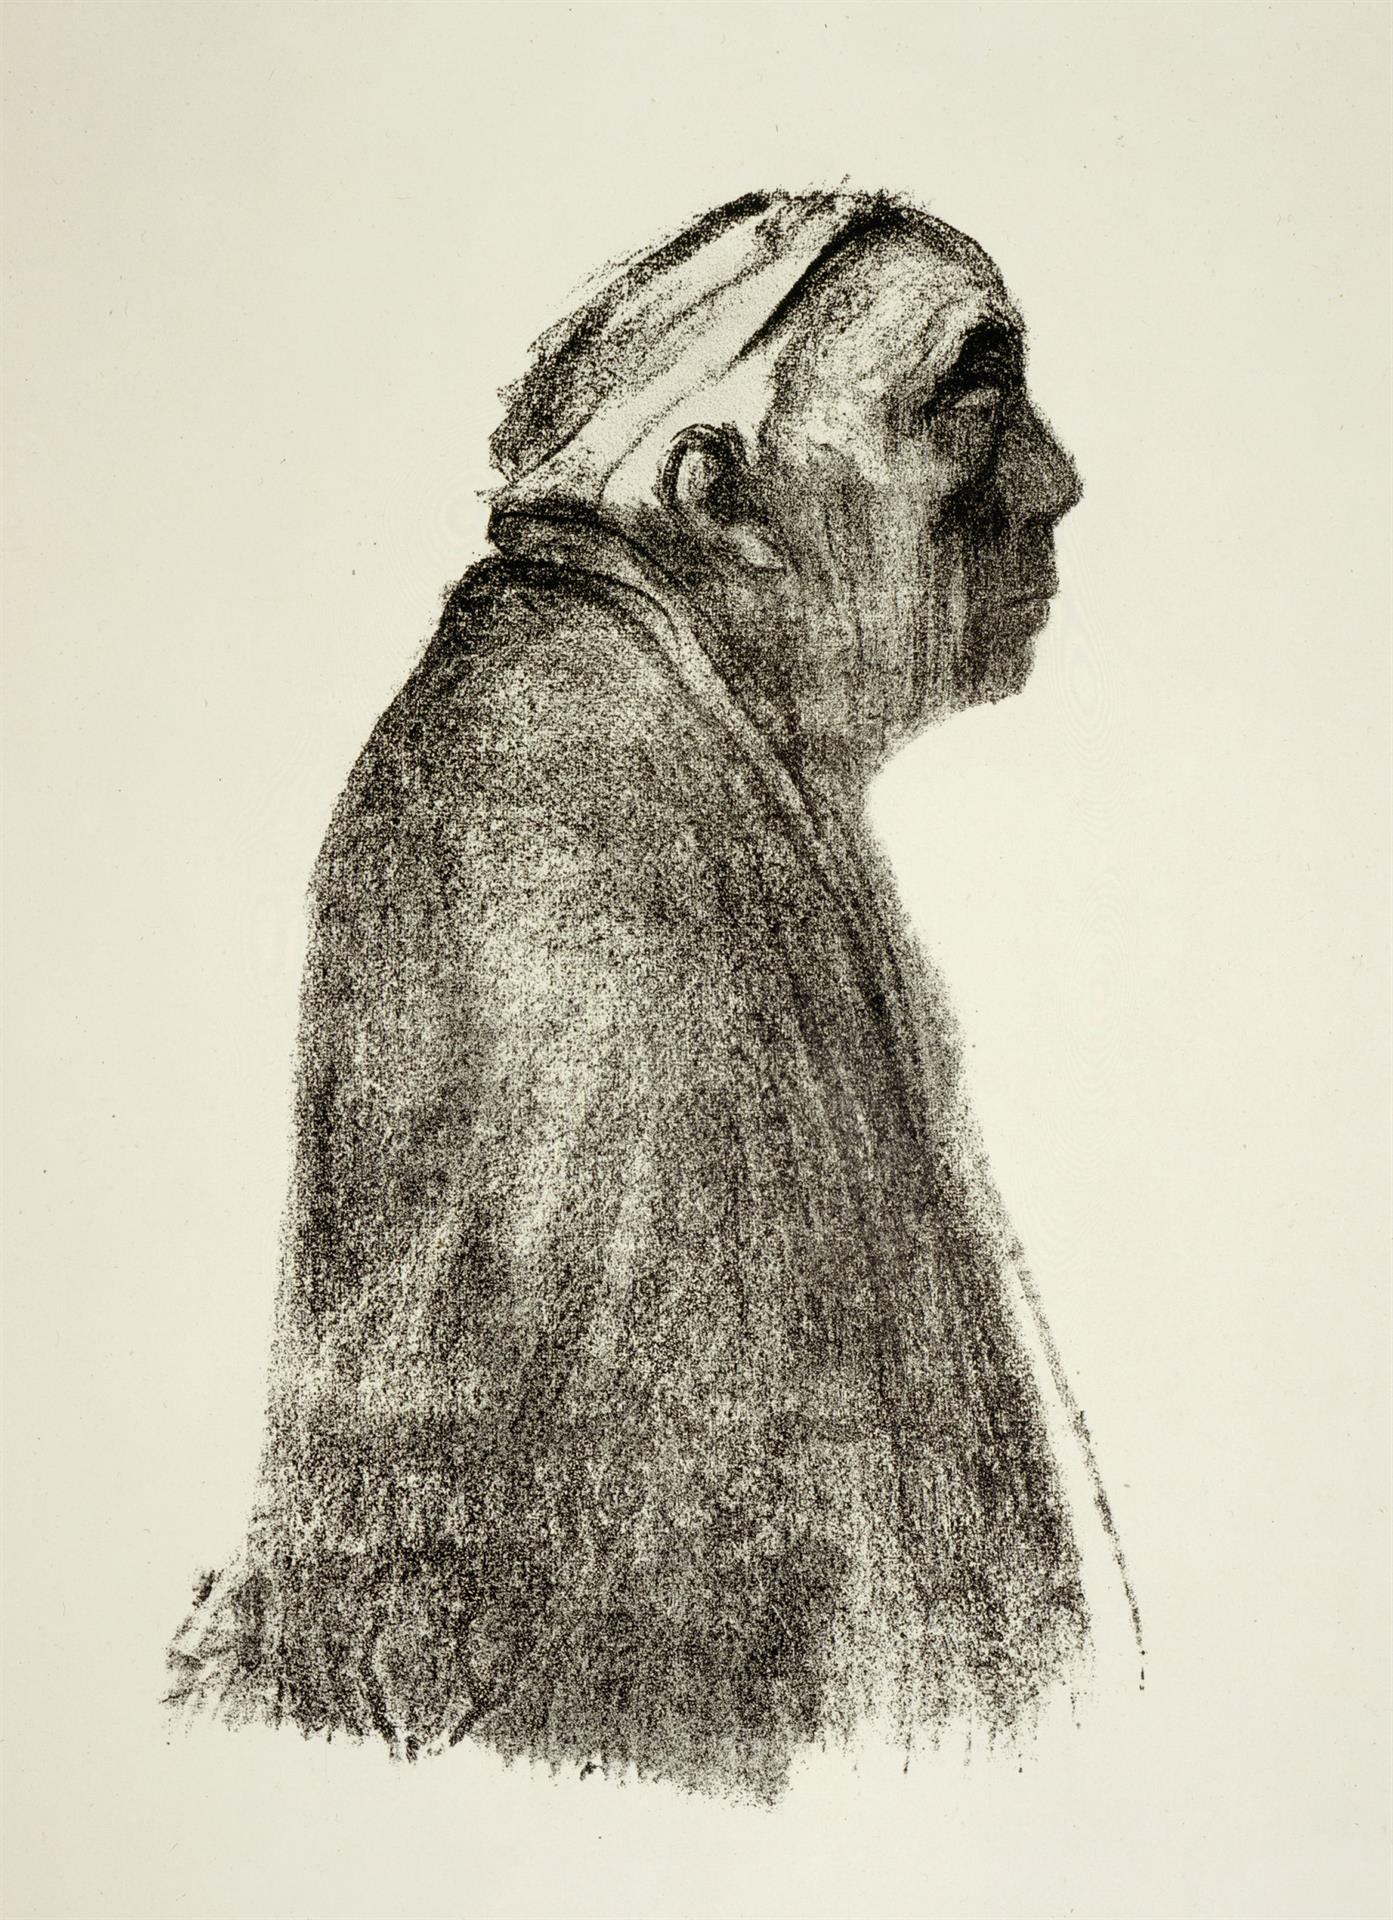 Käthe Kollwitz, Autoportrait, profil droit, 1938 ?, lithographie au crayon (report), Kn 273 III